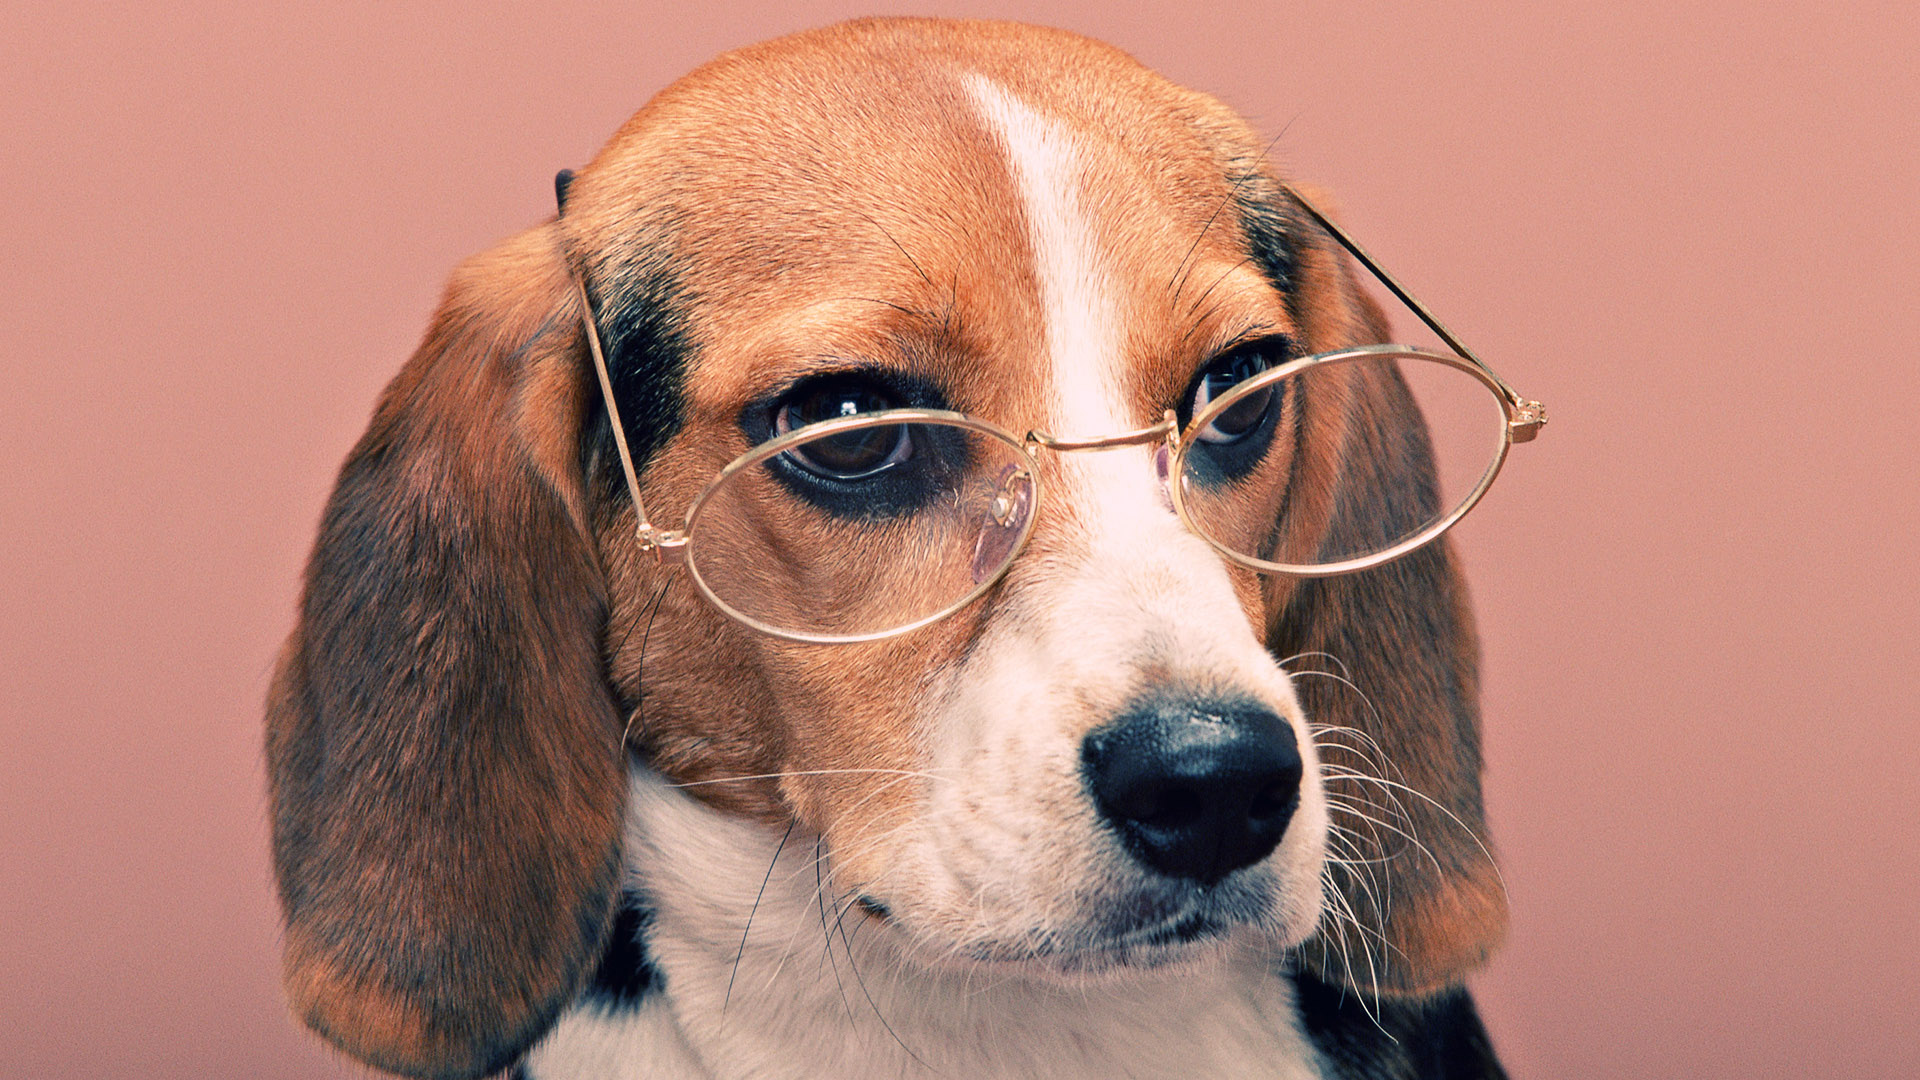 Funny Dog Desktop Image - Funny Dog Image Hd , HD Wallpaper & Backgrounds